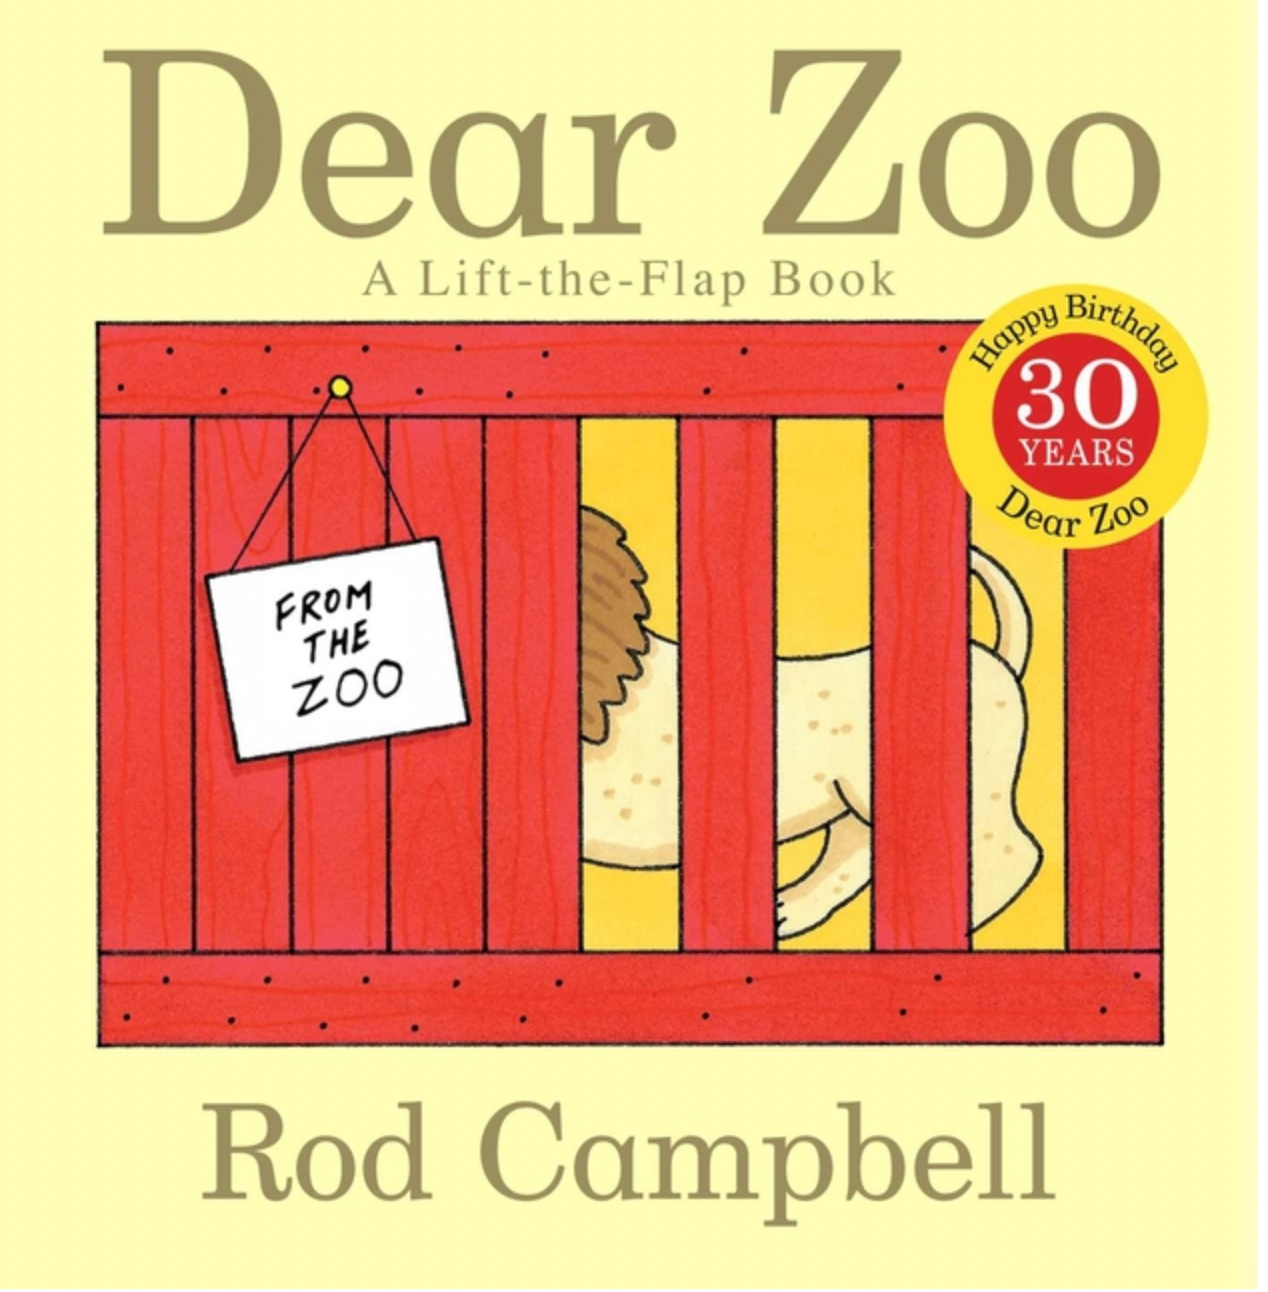 Dear Zoo: A Lift-The-Flap Book (Anniversary) (Dear Zoo & Friends) (30TH ed.) ECBC